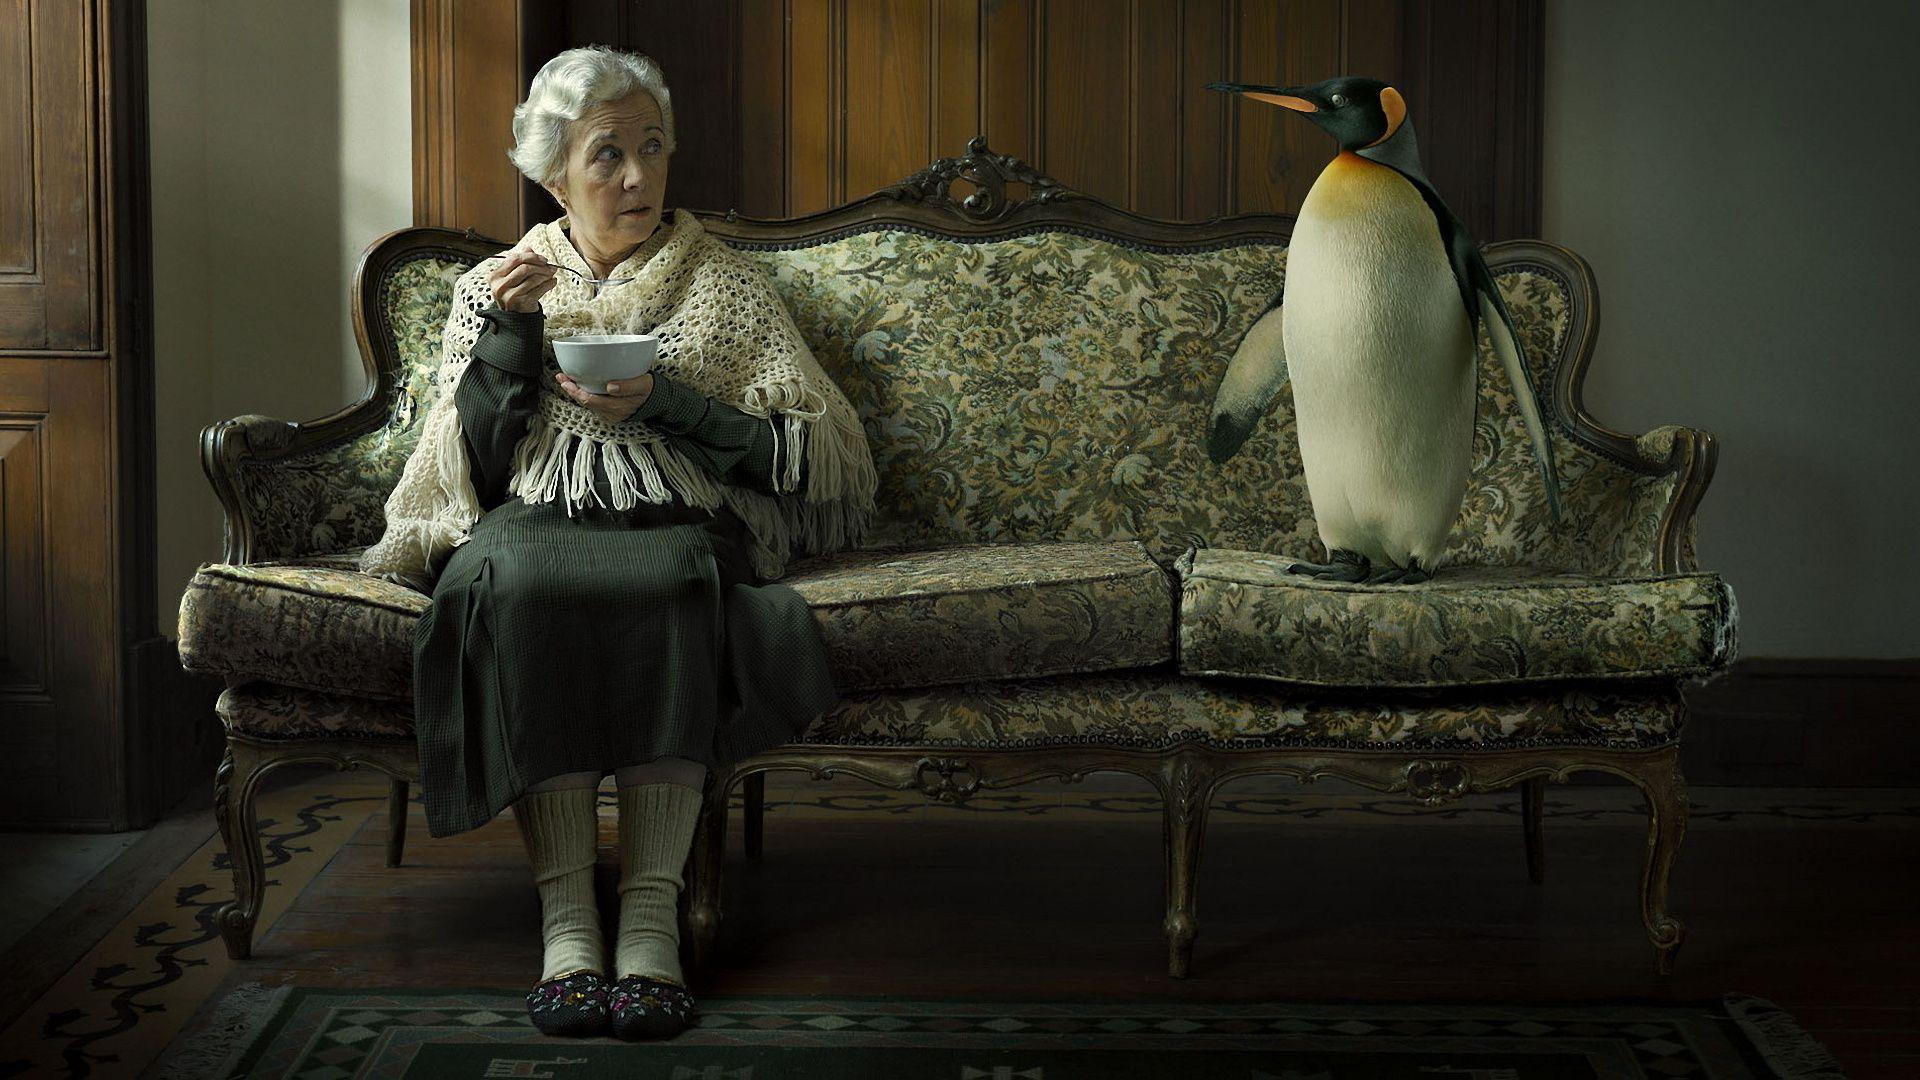 Grandma, Penguin, Sofa Wallpaper and Picture, Photo